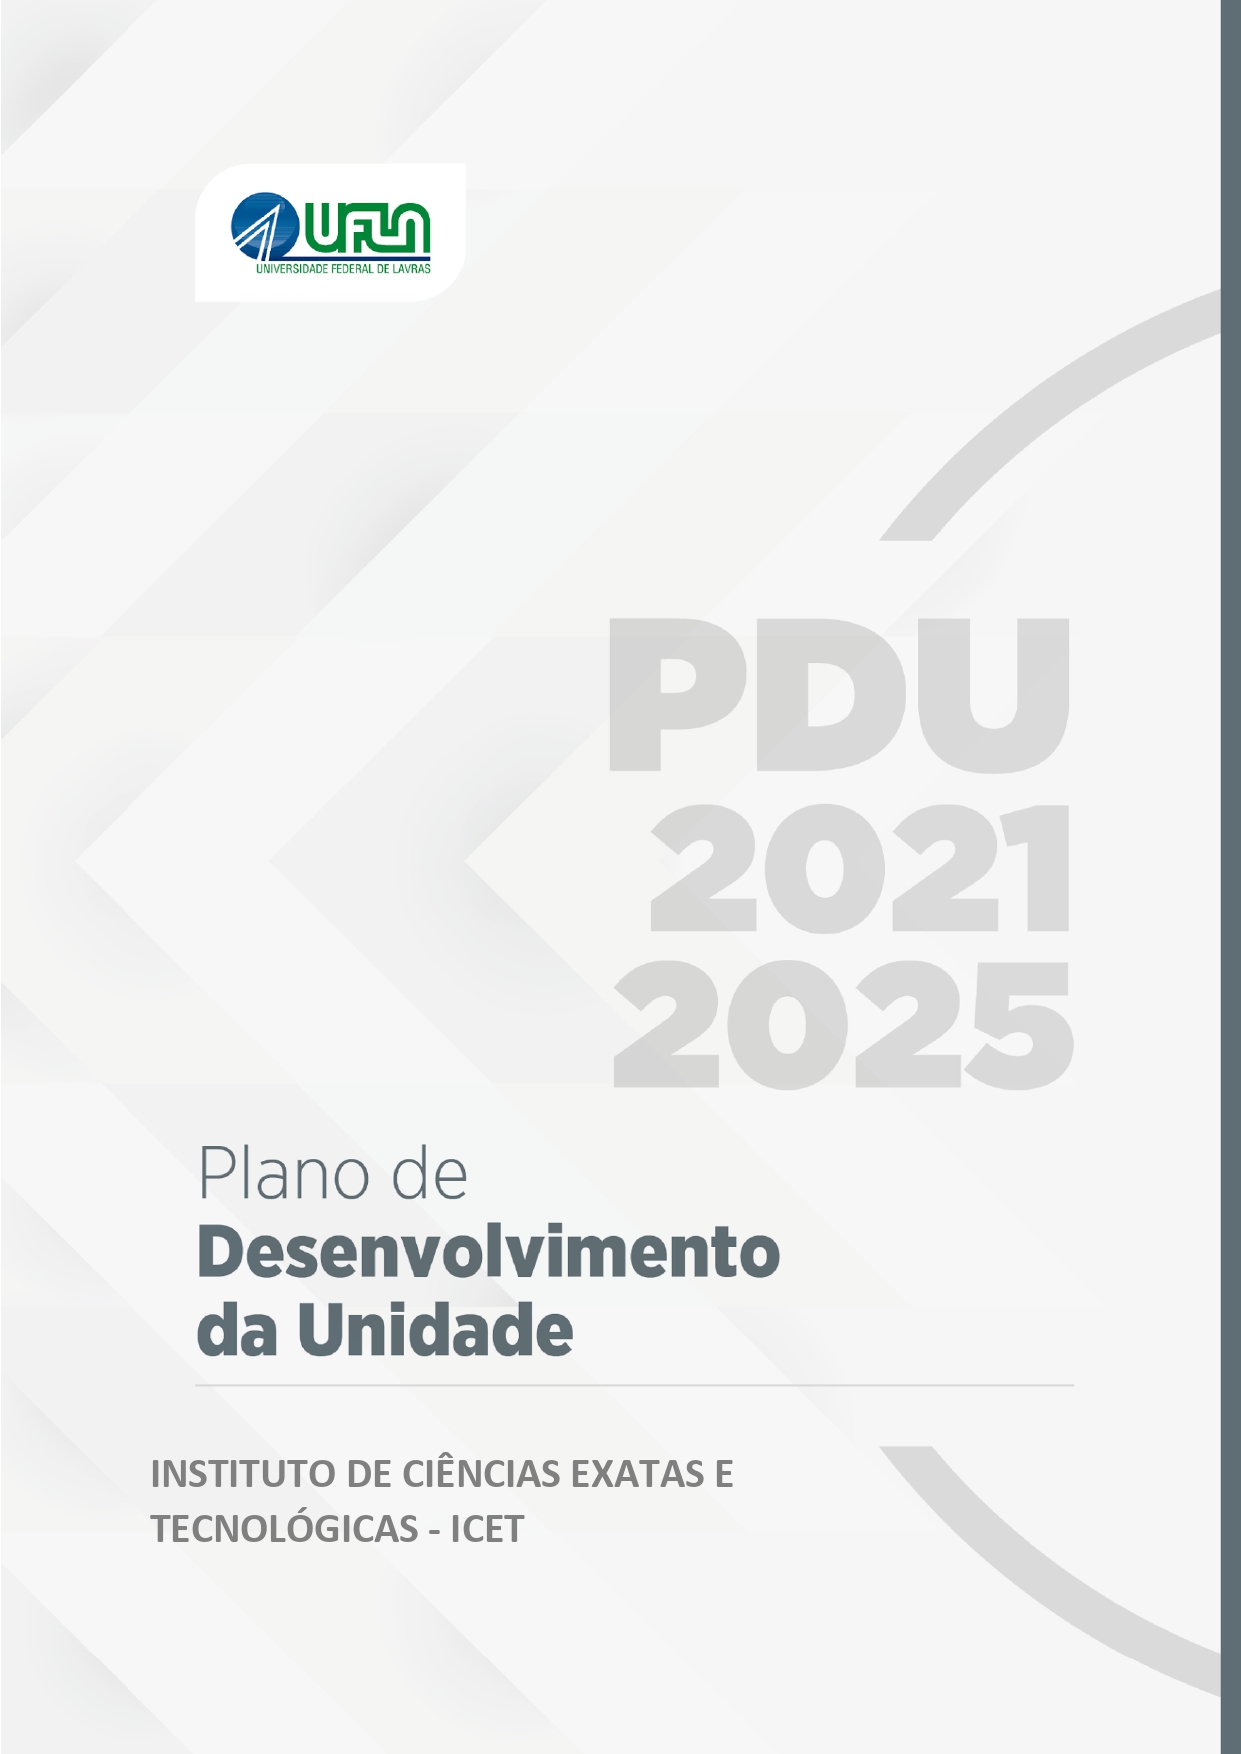 PDU ICET 2021 2025 v1.2 1 page 0001